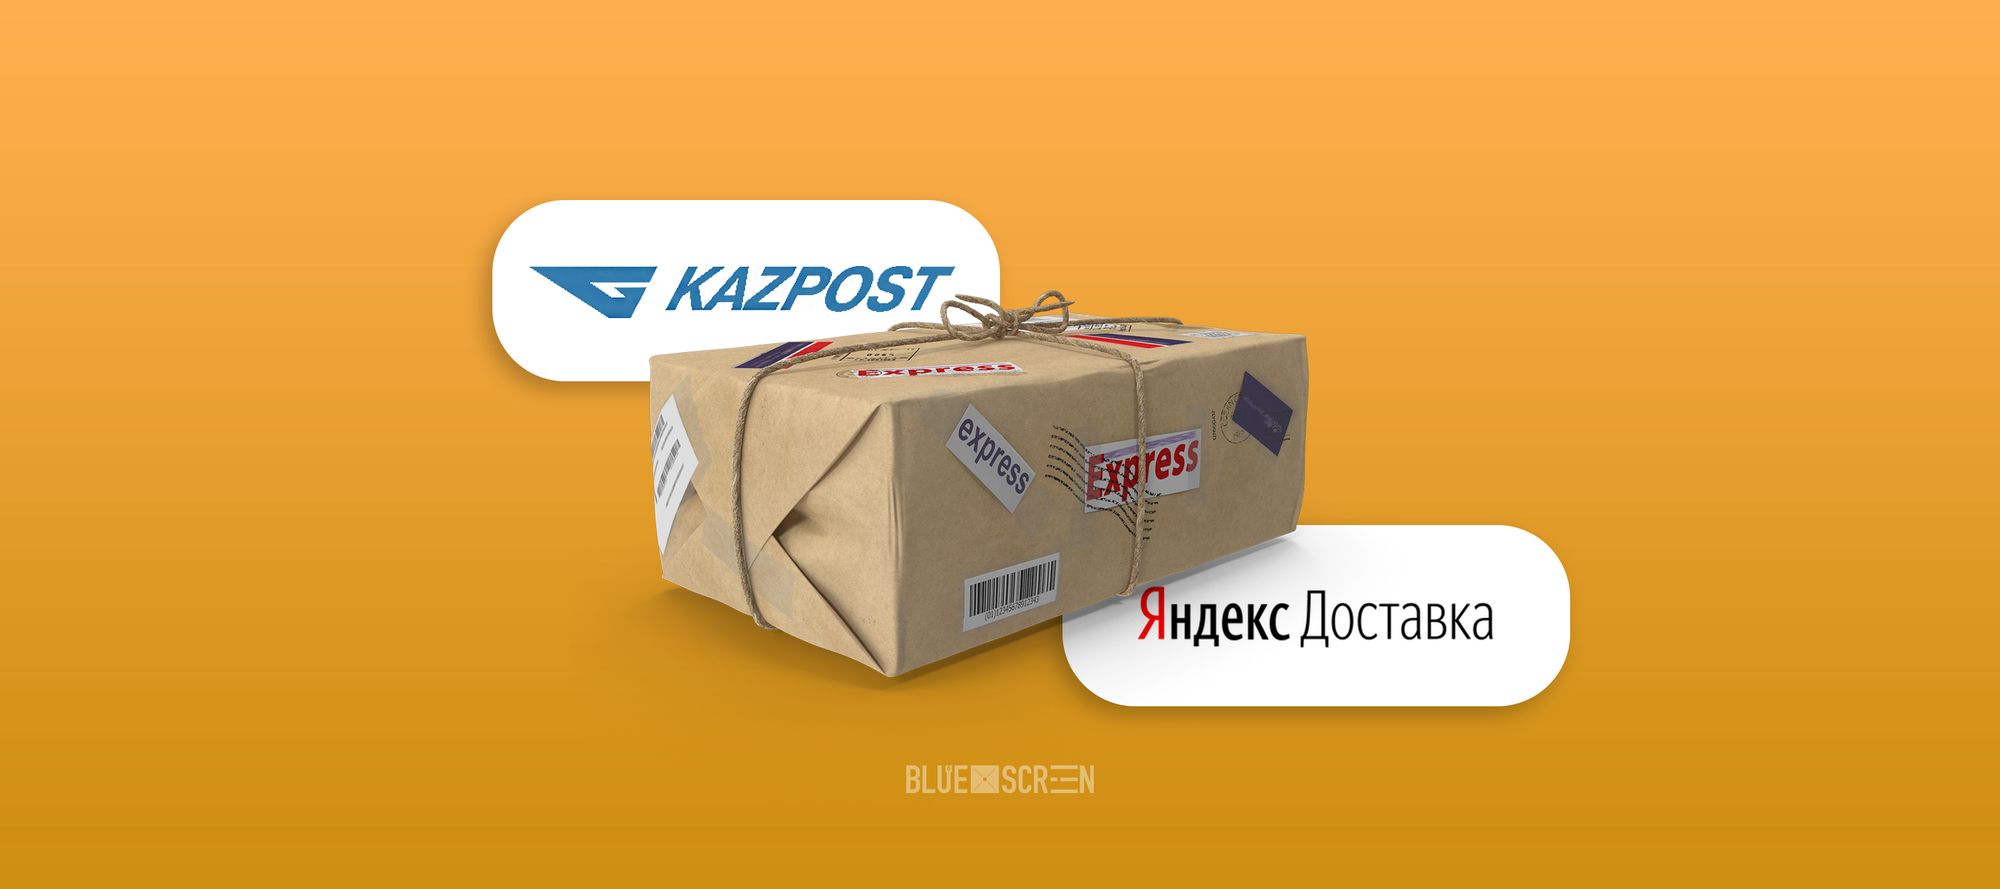 “Казпочта” и “Яндекс Доставка” объявили о сотрудничестве